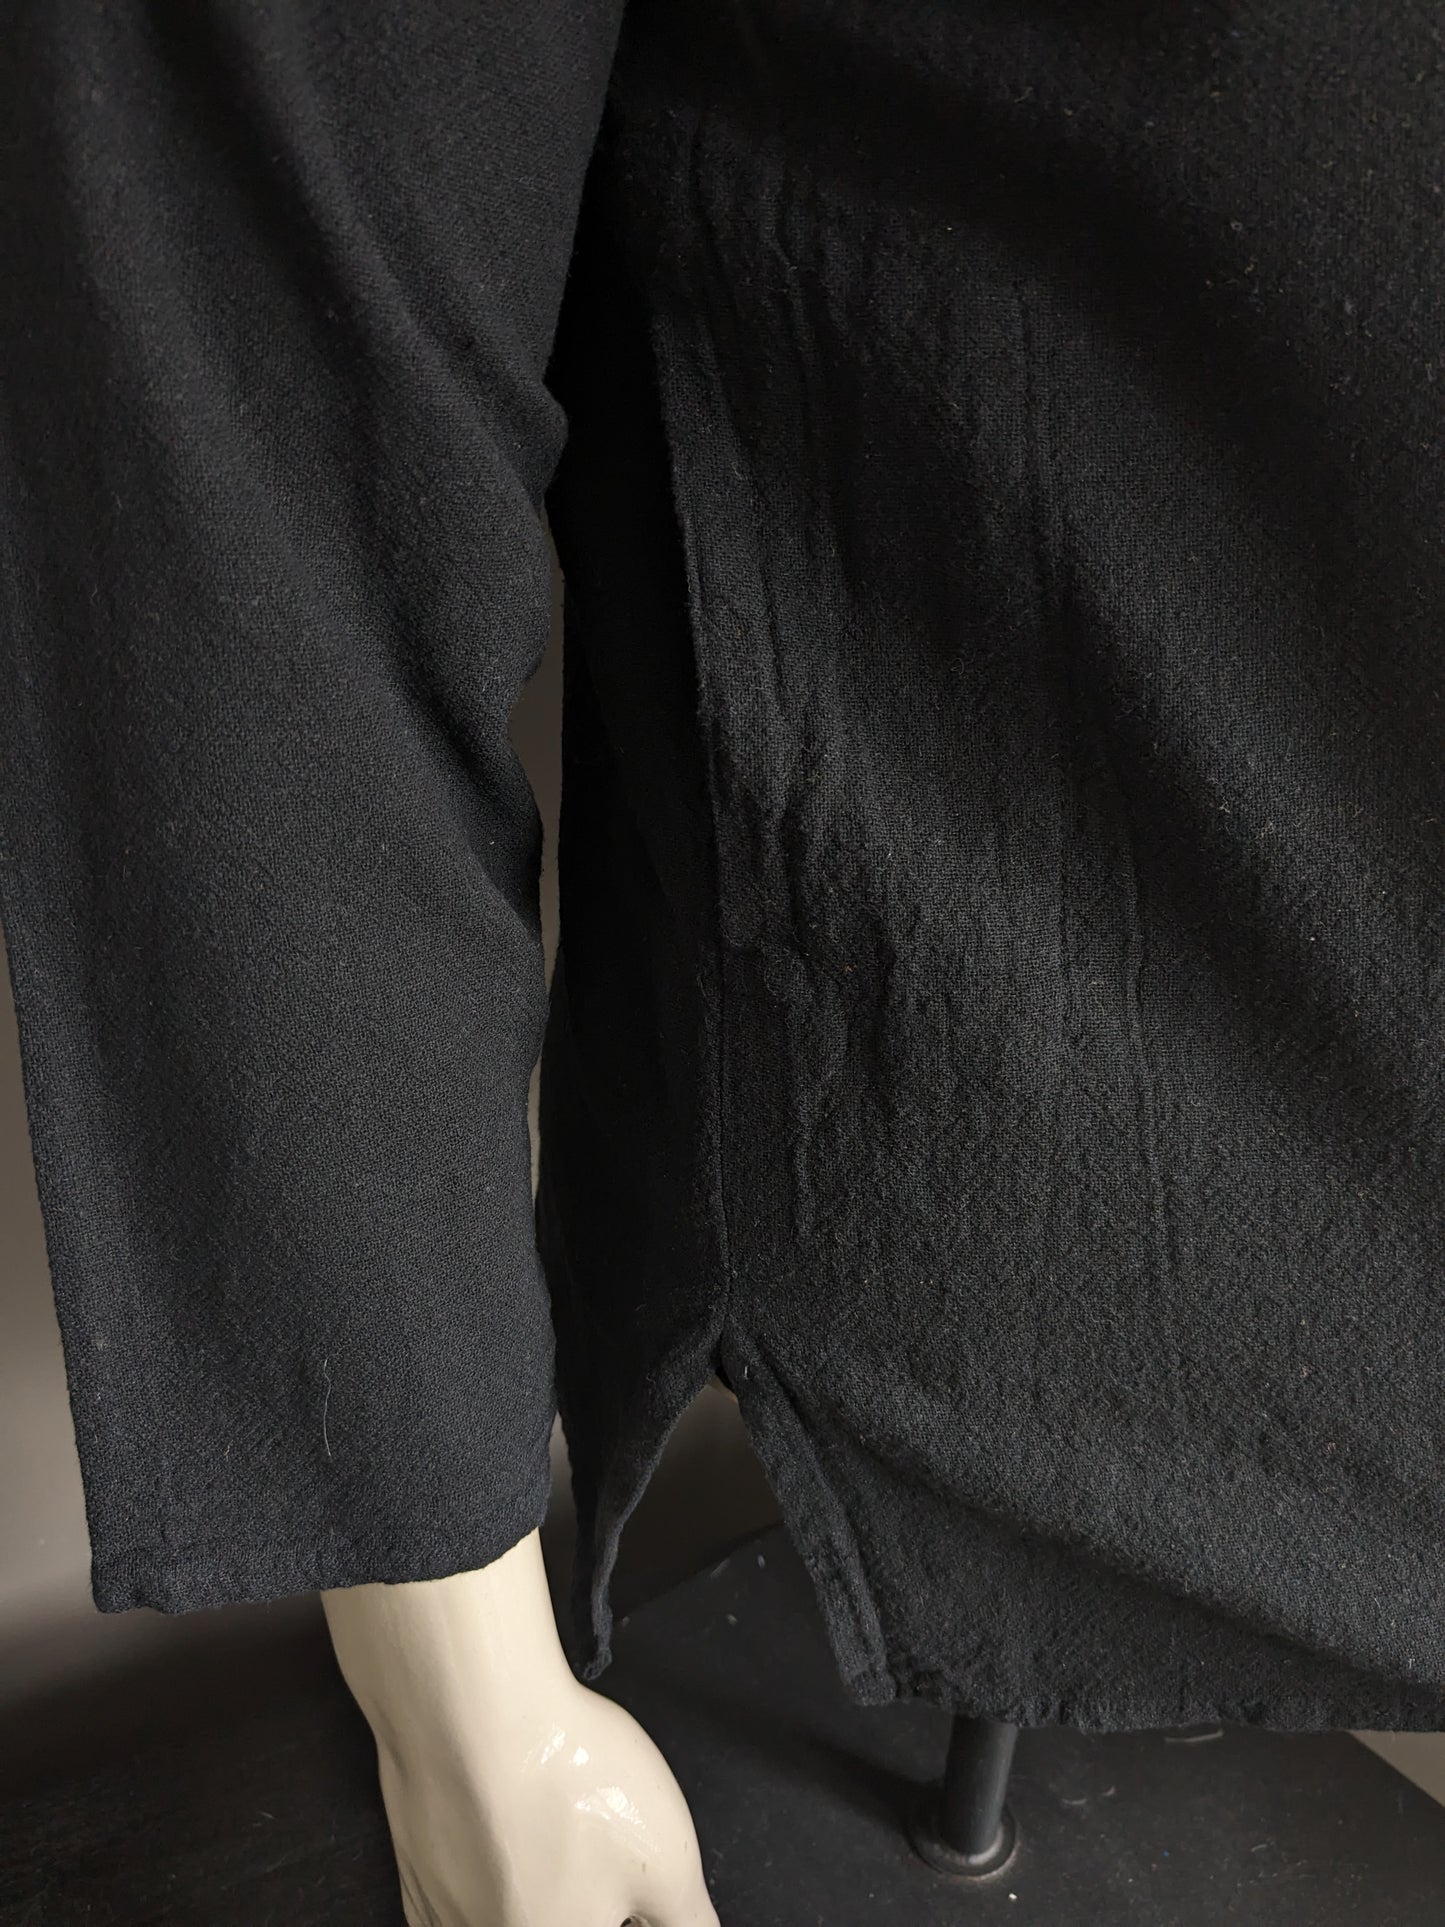 Camisa vintage camisa con 1 bolsa y mao / granjeros / cuello vertical. Color negro. Talla M.